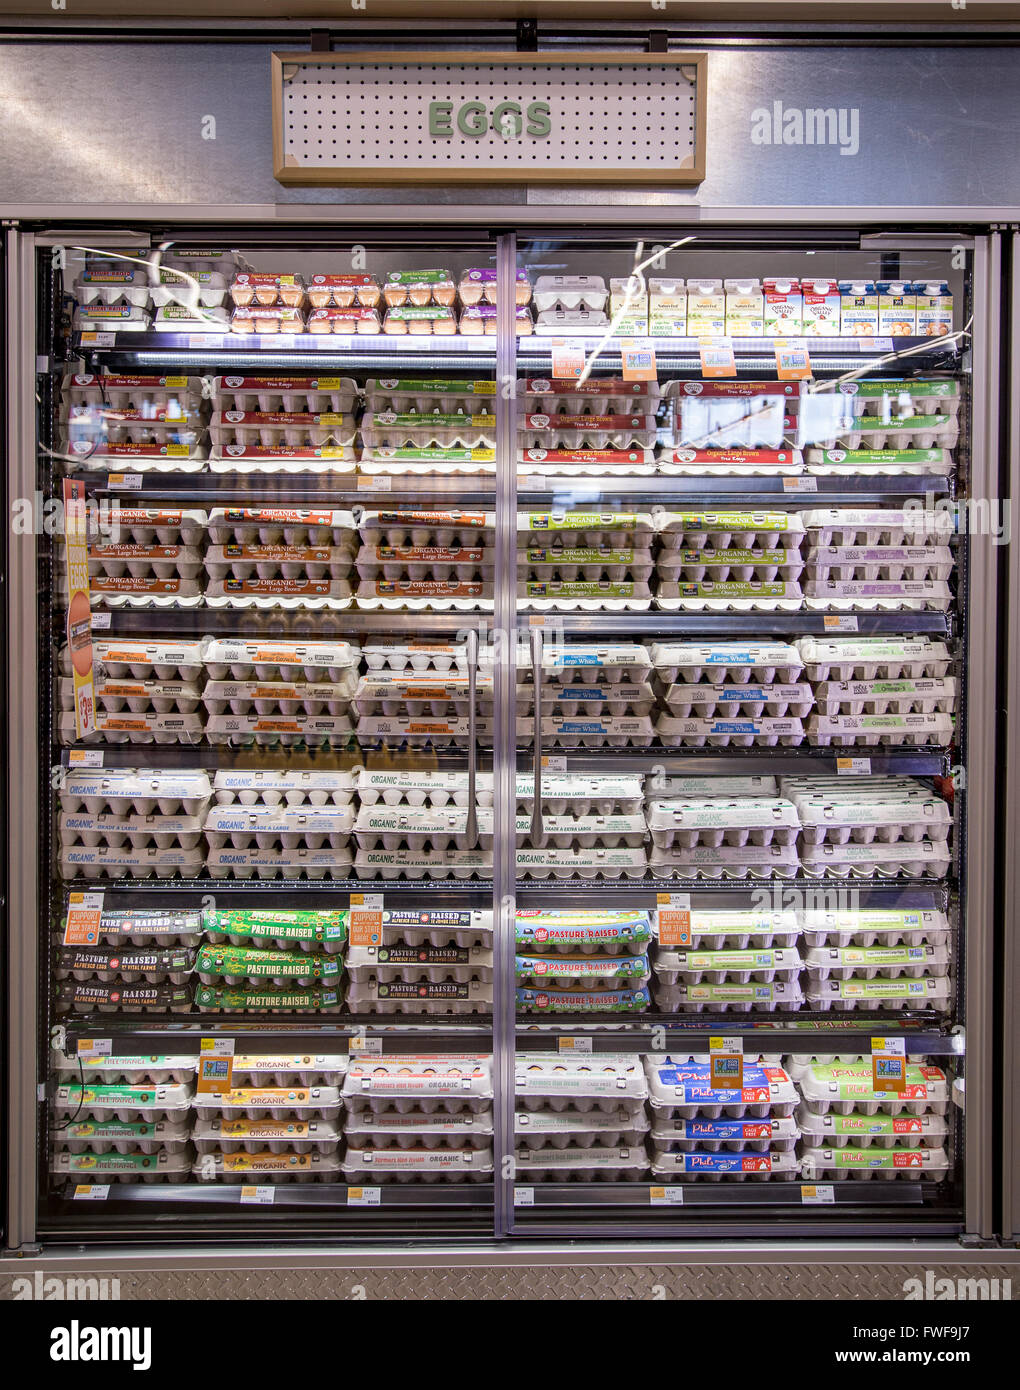 Kartons mit Eiern in eine Molkerei Kühlschrank-Fall in einem Lebensmittelgeschäft angezeigt Stockfoto